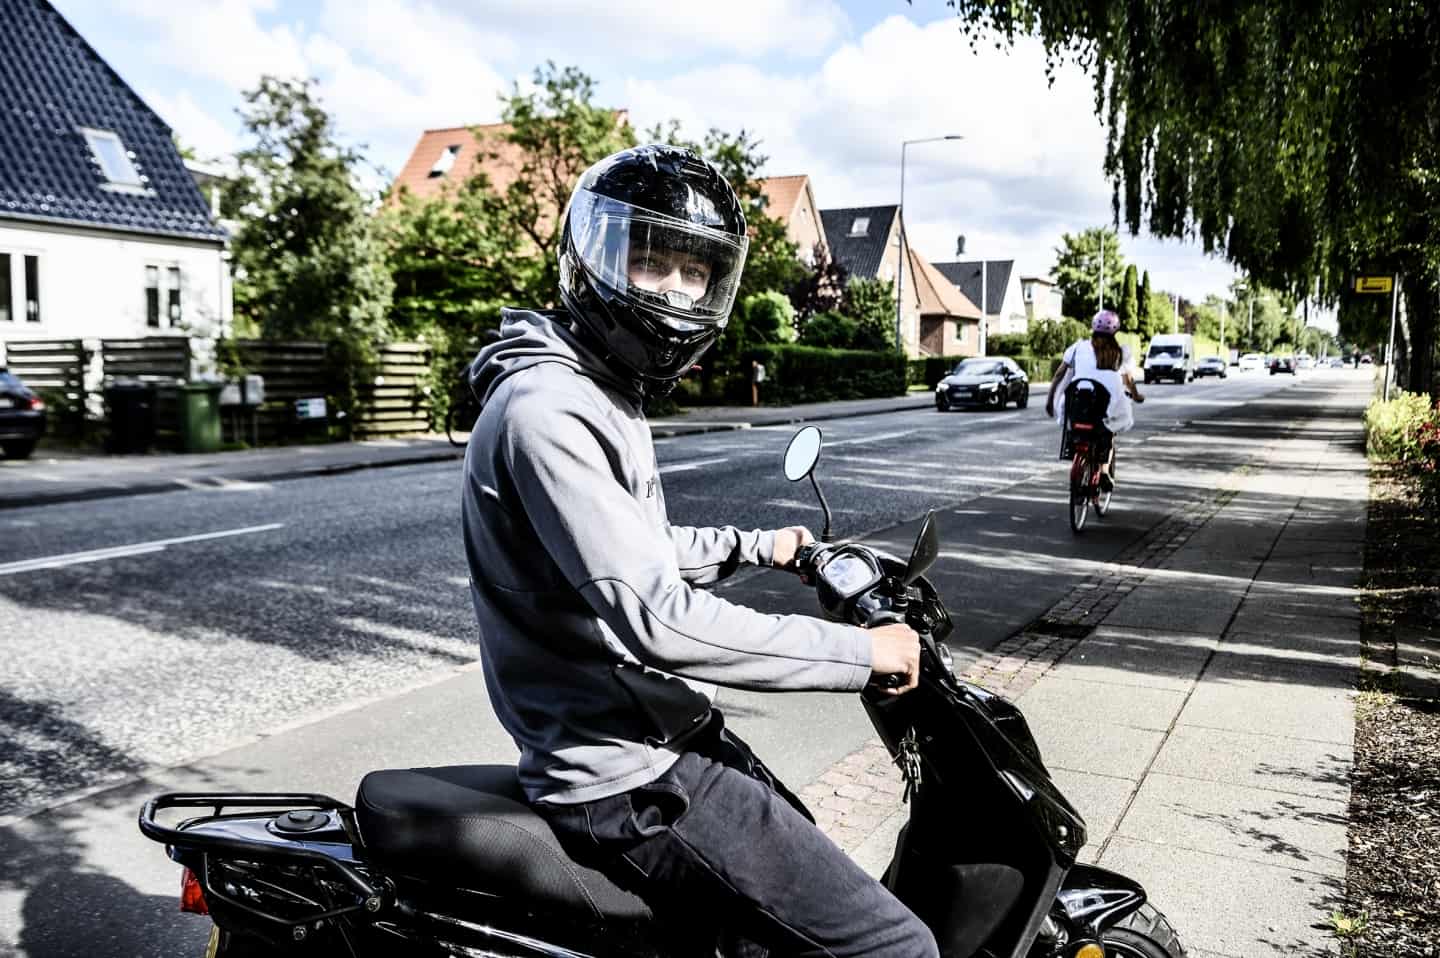 Jeg er stolt Tale Forvirre Emil blev ramt af skud, da han kørte på scooter hjem fra arbejde:  Skuddramaet på Fredericiavej udløste politiaktion | vafo.dk